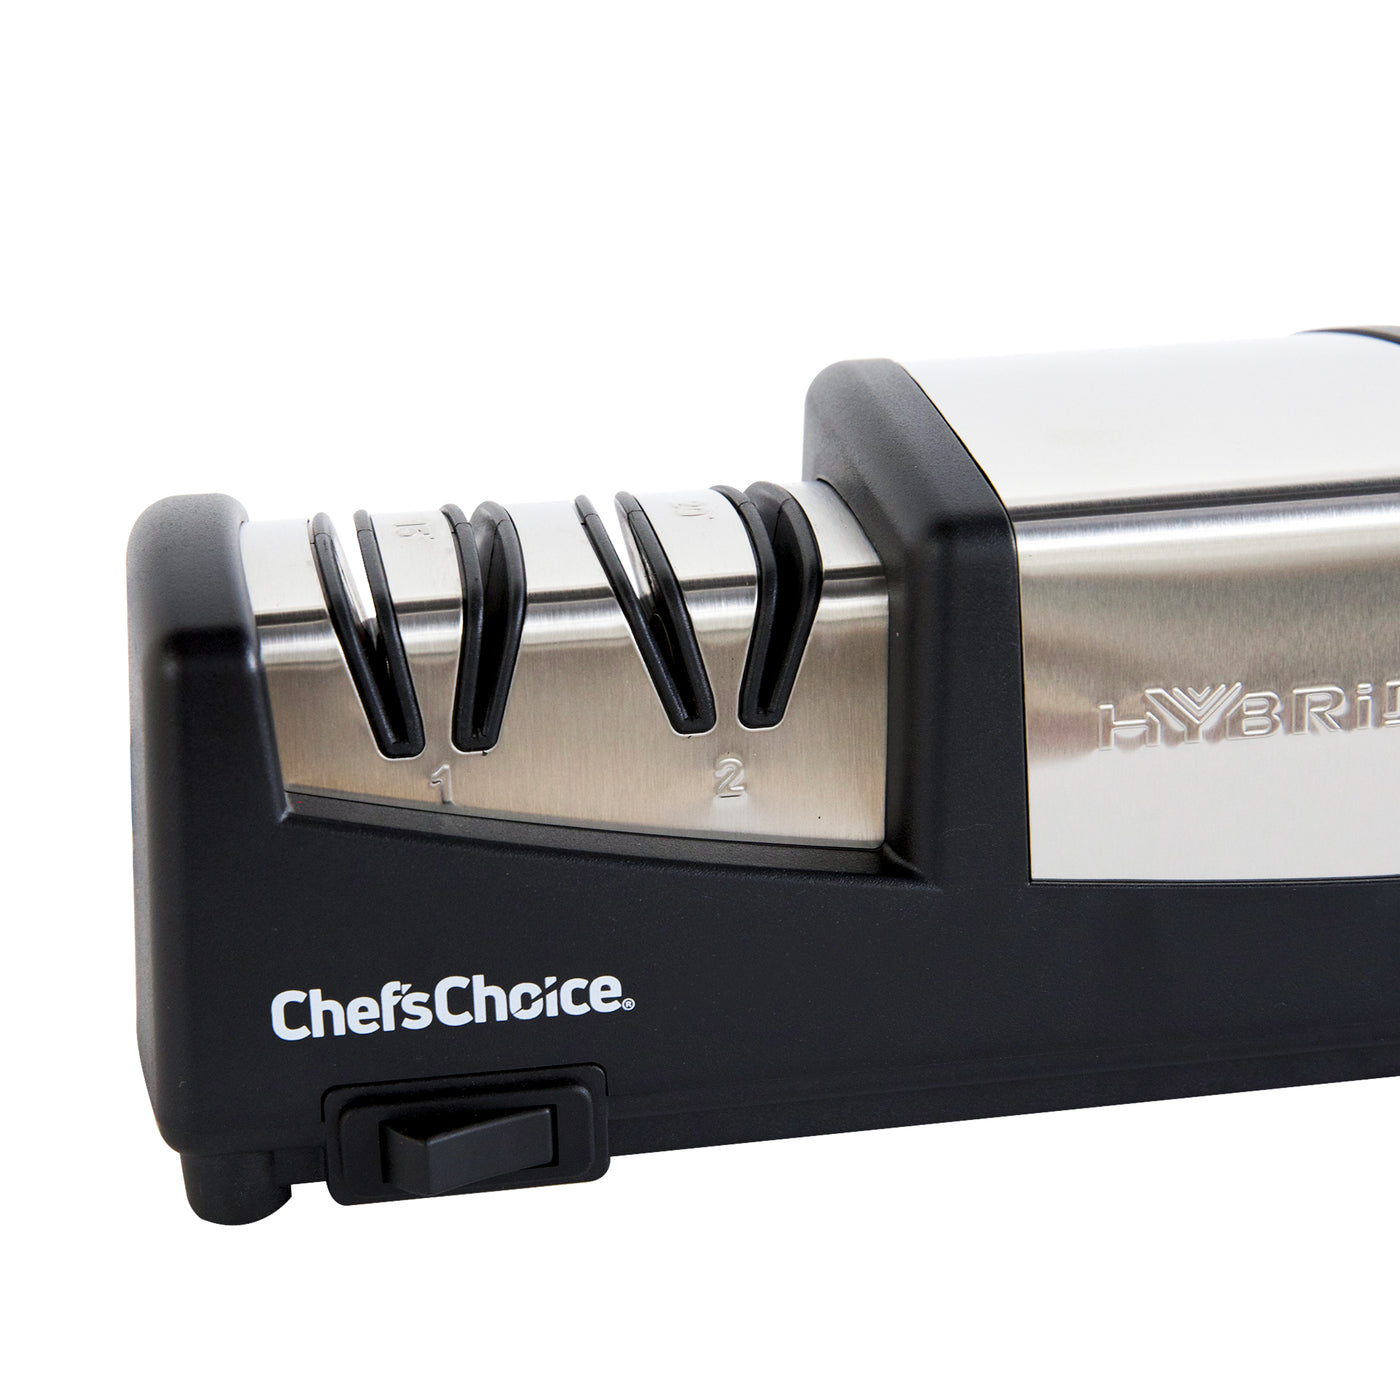 Chef&s Choice Diamond Hone Hybrid Knife Sharpener Model 210